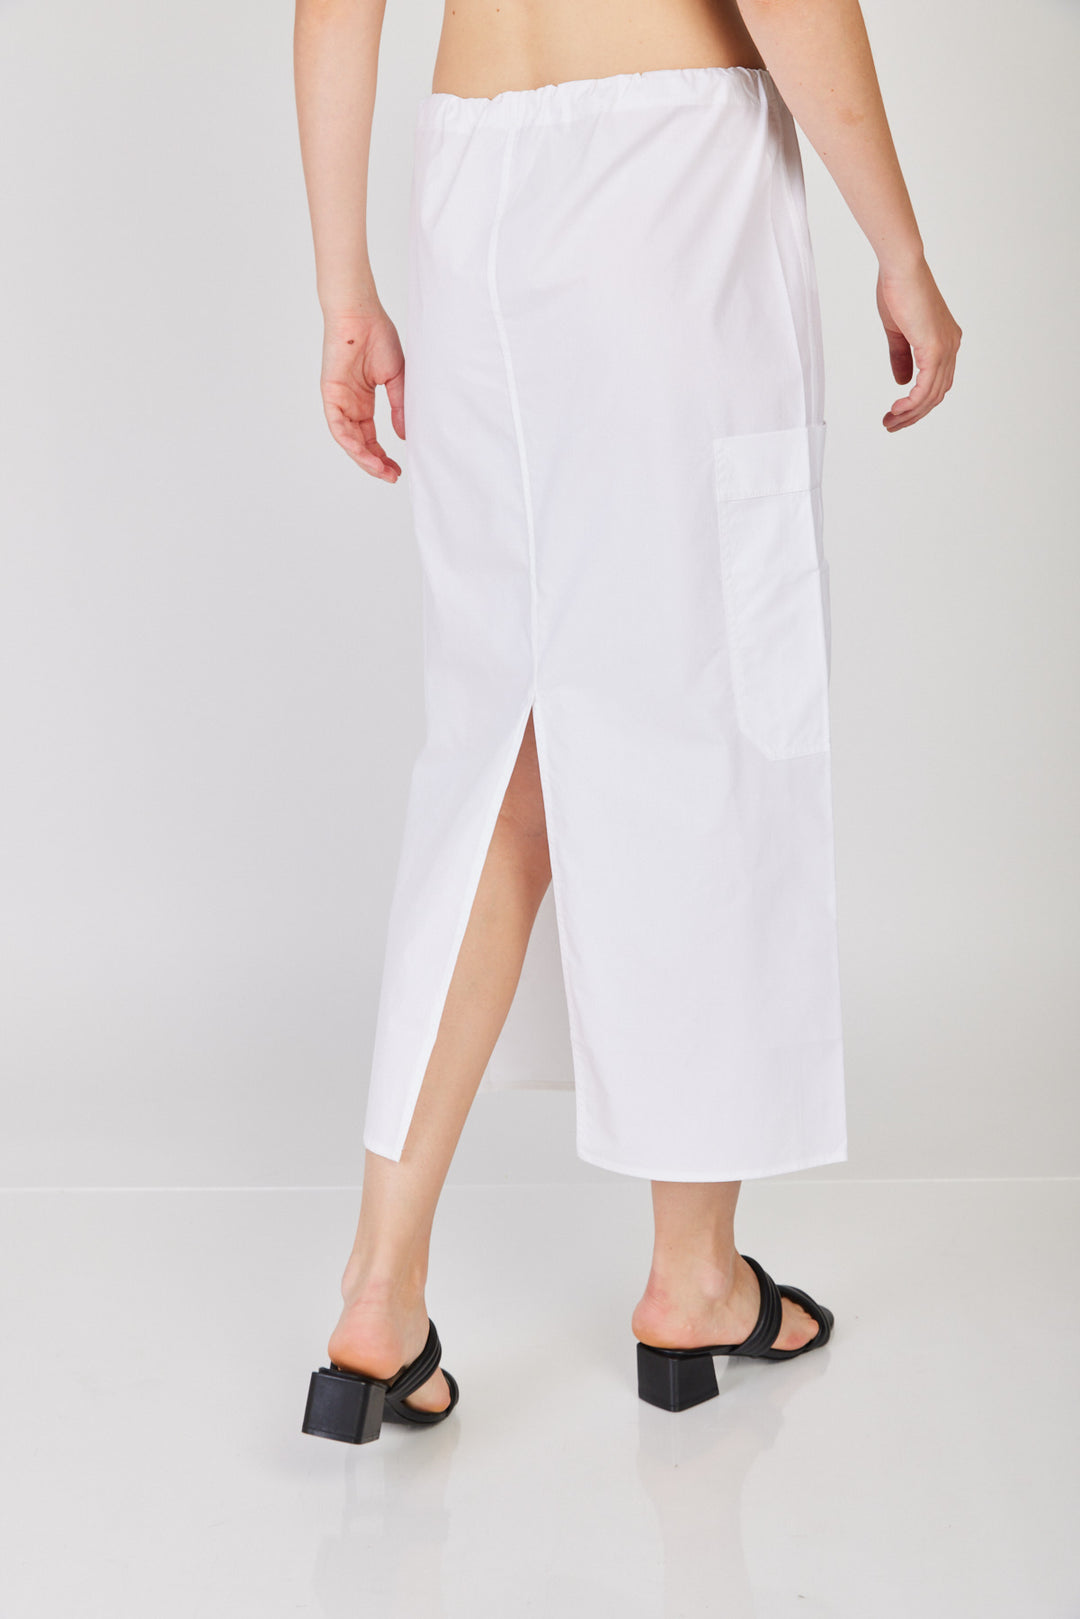 חצאית בריטאני בצבע לבן